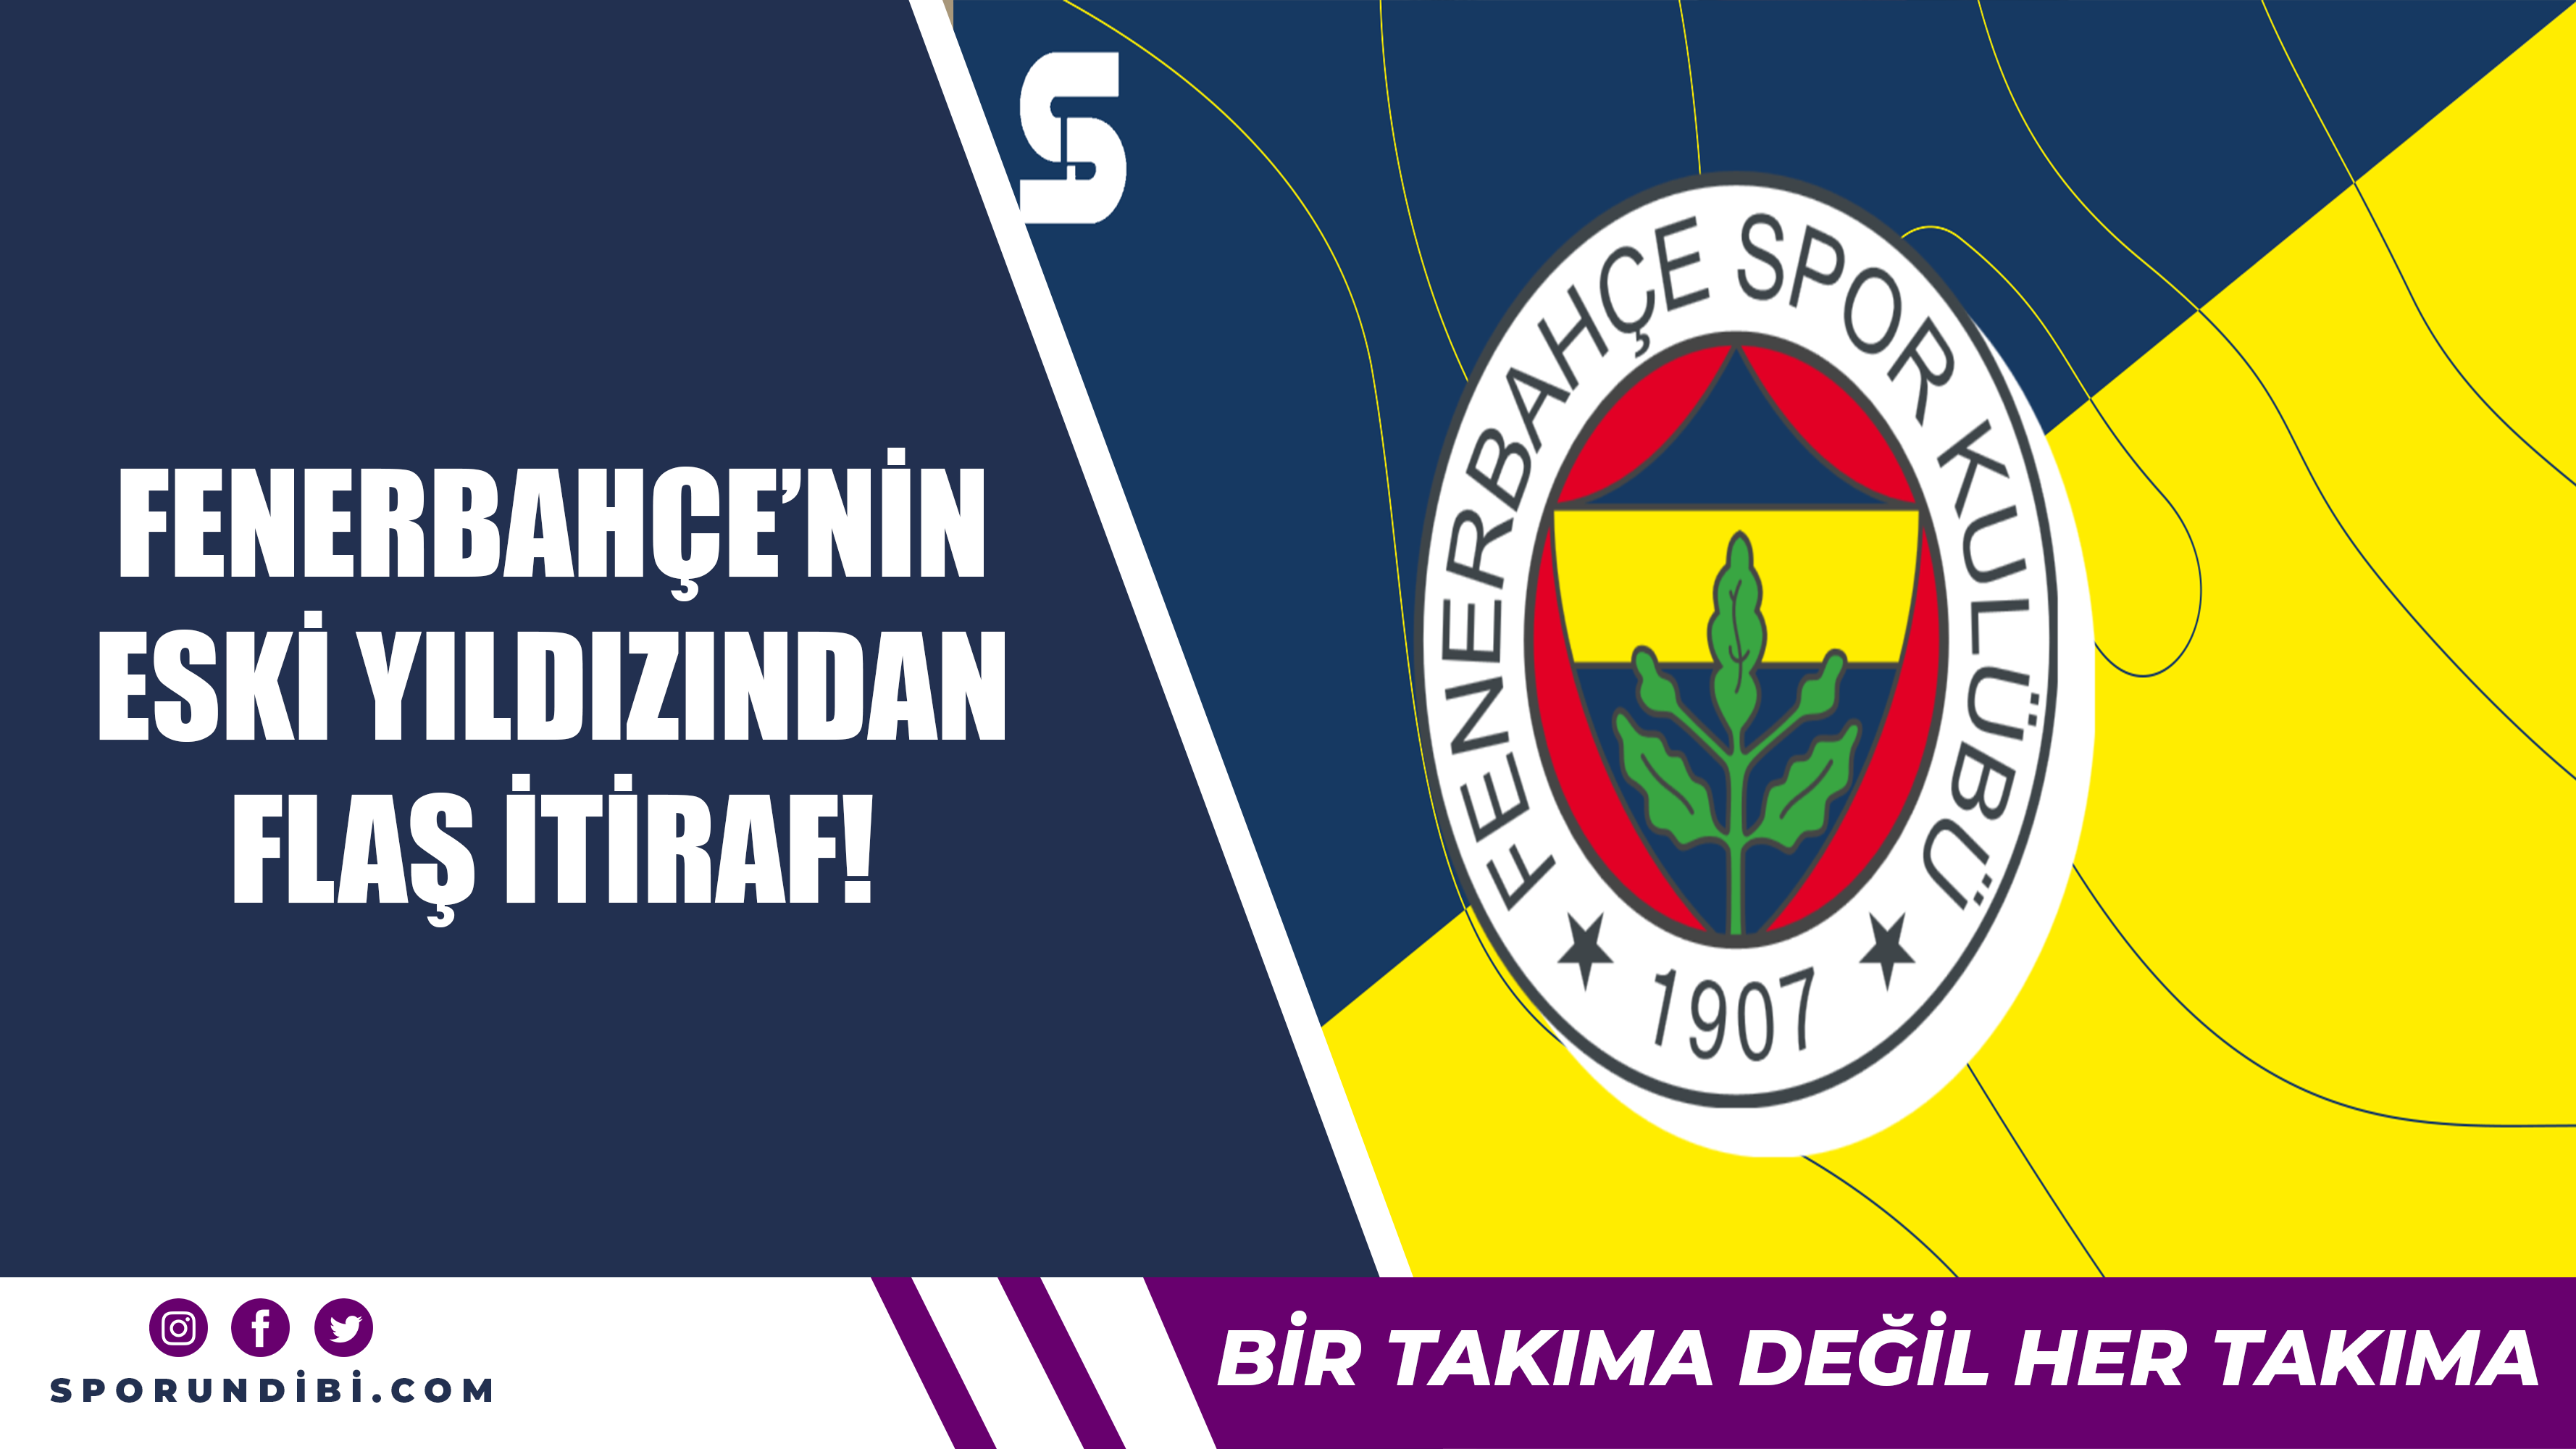 Fenerbahçe'nin eski yıldızından flaş itiraf!